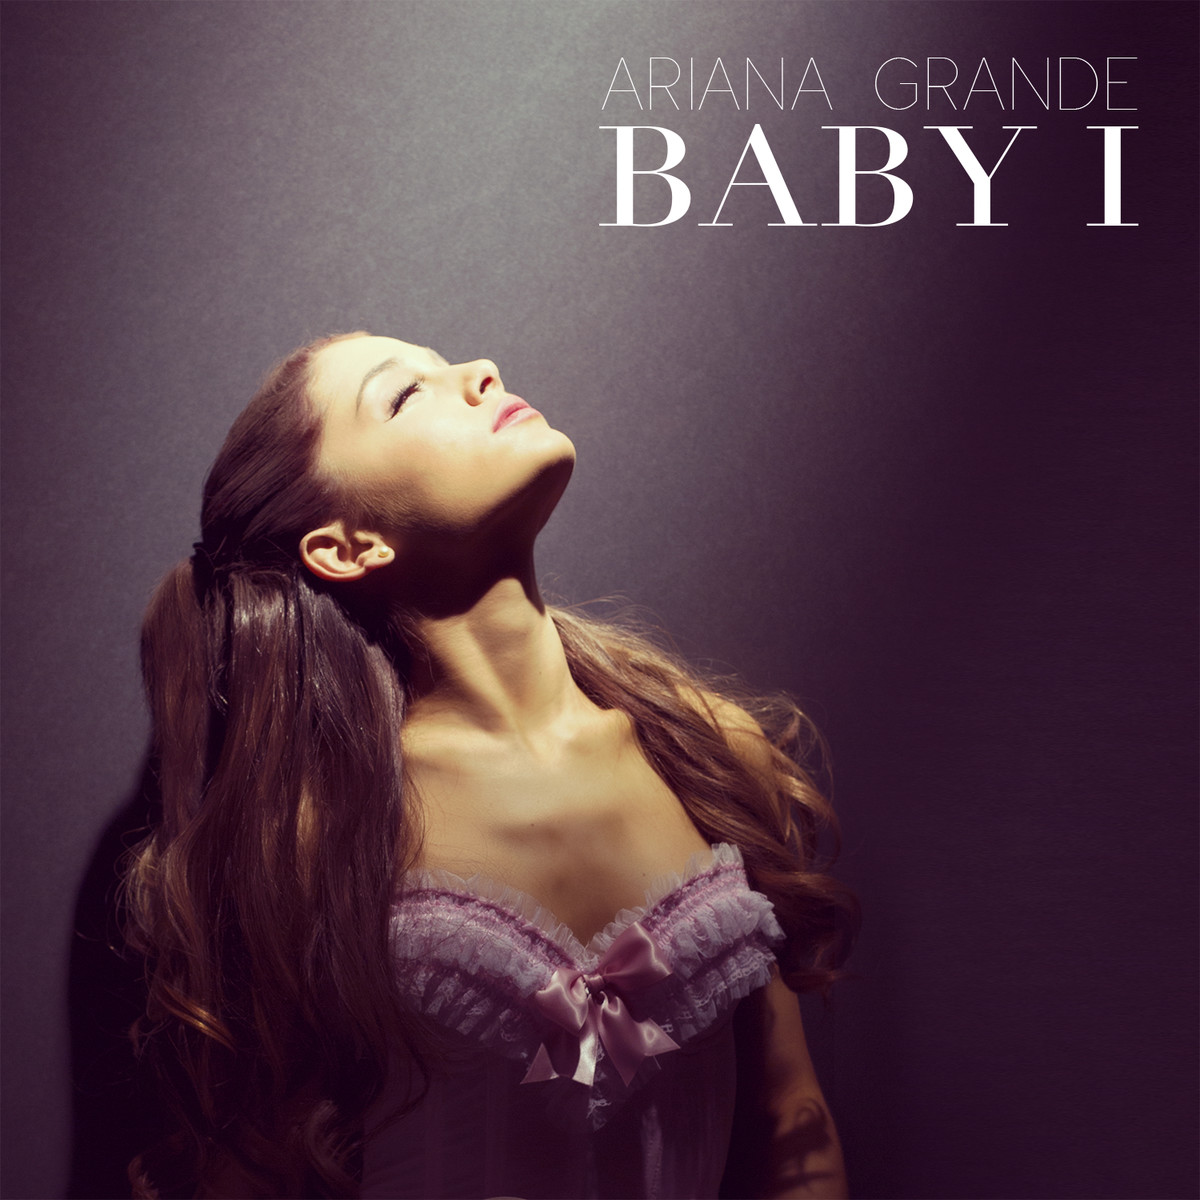 Baby I | Ariana Grande Wiki | FANDOM powered by Wikia